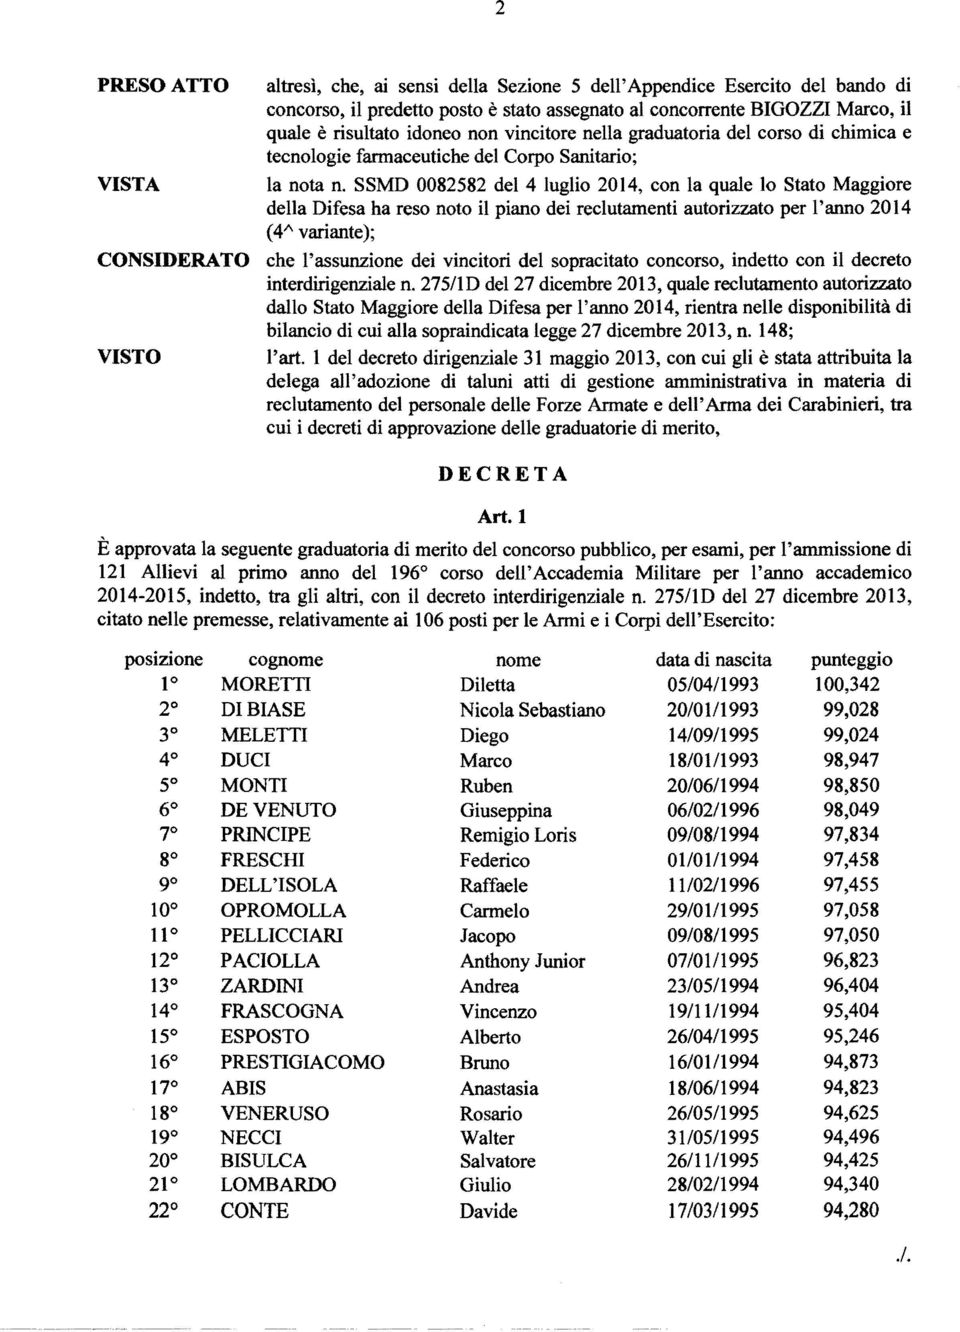 SSMD 0082582 del 4 luglio 2014, con la quale lo Stato Maggiore della Difesa ha reso noto il piano dei reclutamenti autorizzato per l'anno 2014 (4" variante); CONSIDERATO che l'assunzione dei